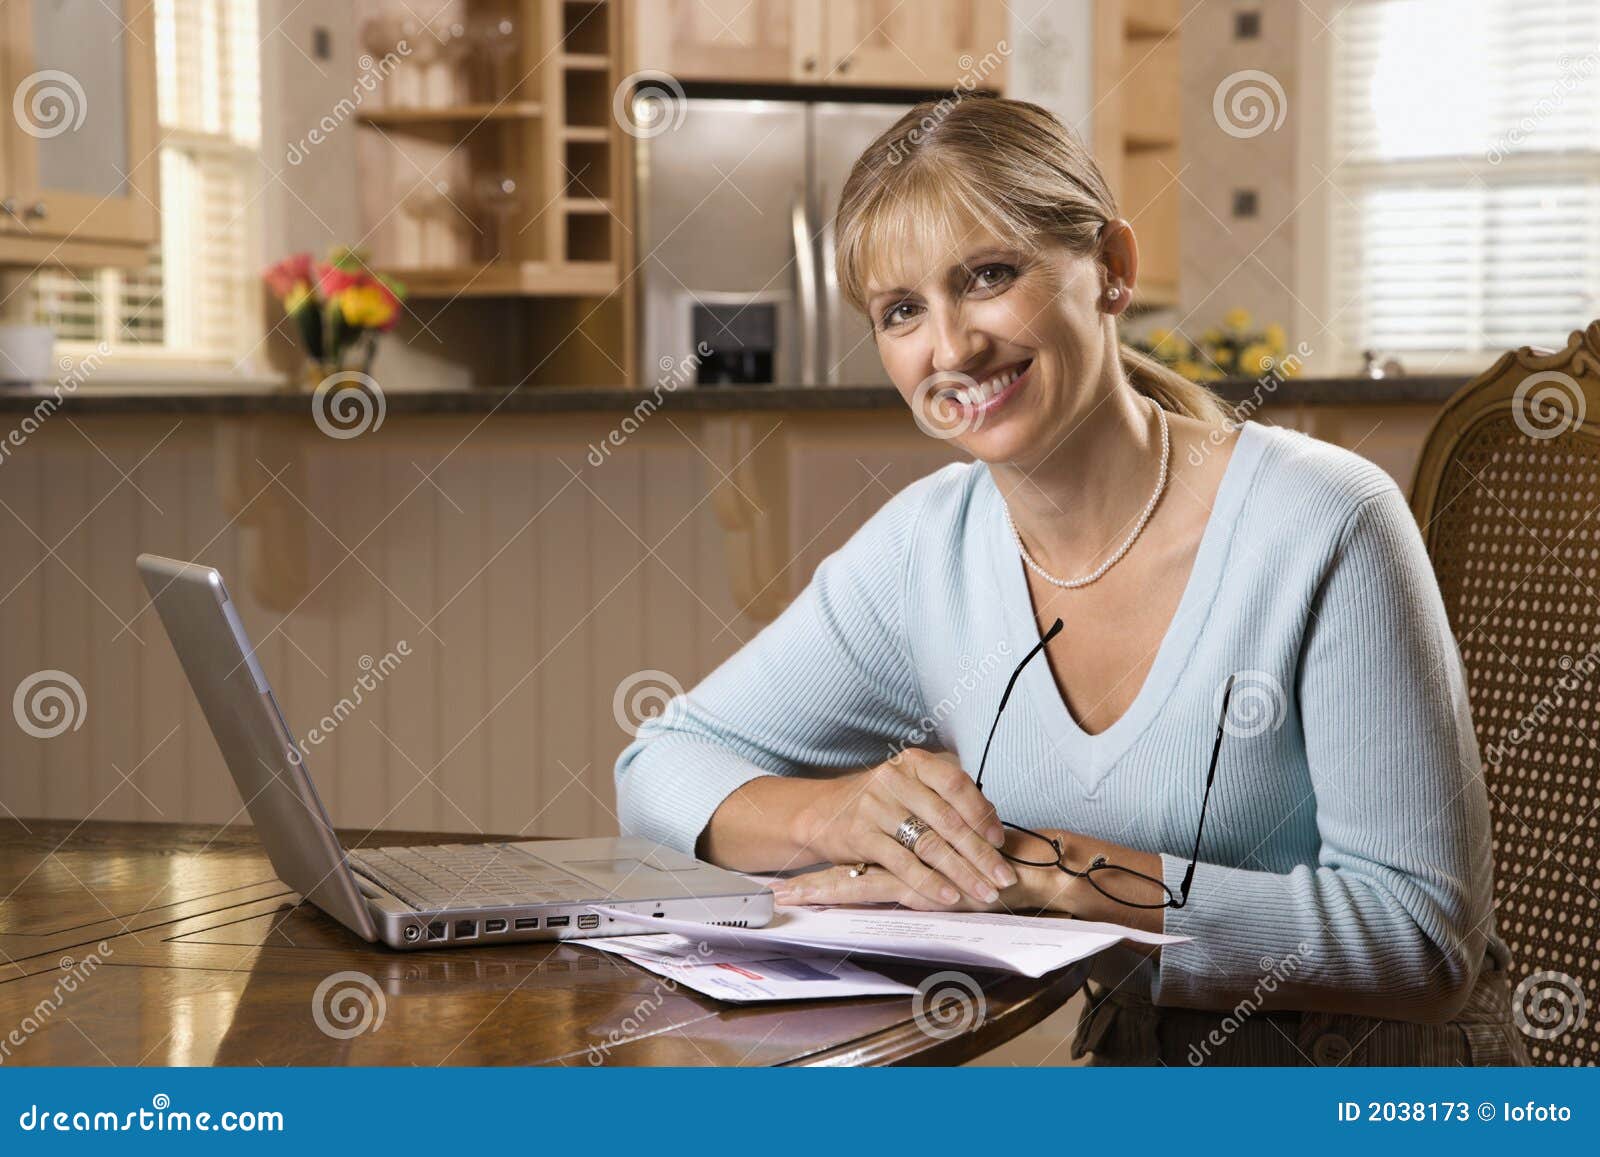 Contas pagando da mulher no computador. Contas pagando da mulher caucasiano do meados de-adulto no computador portátil que olha o visor e o sorriso.